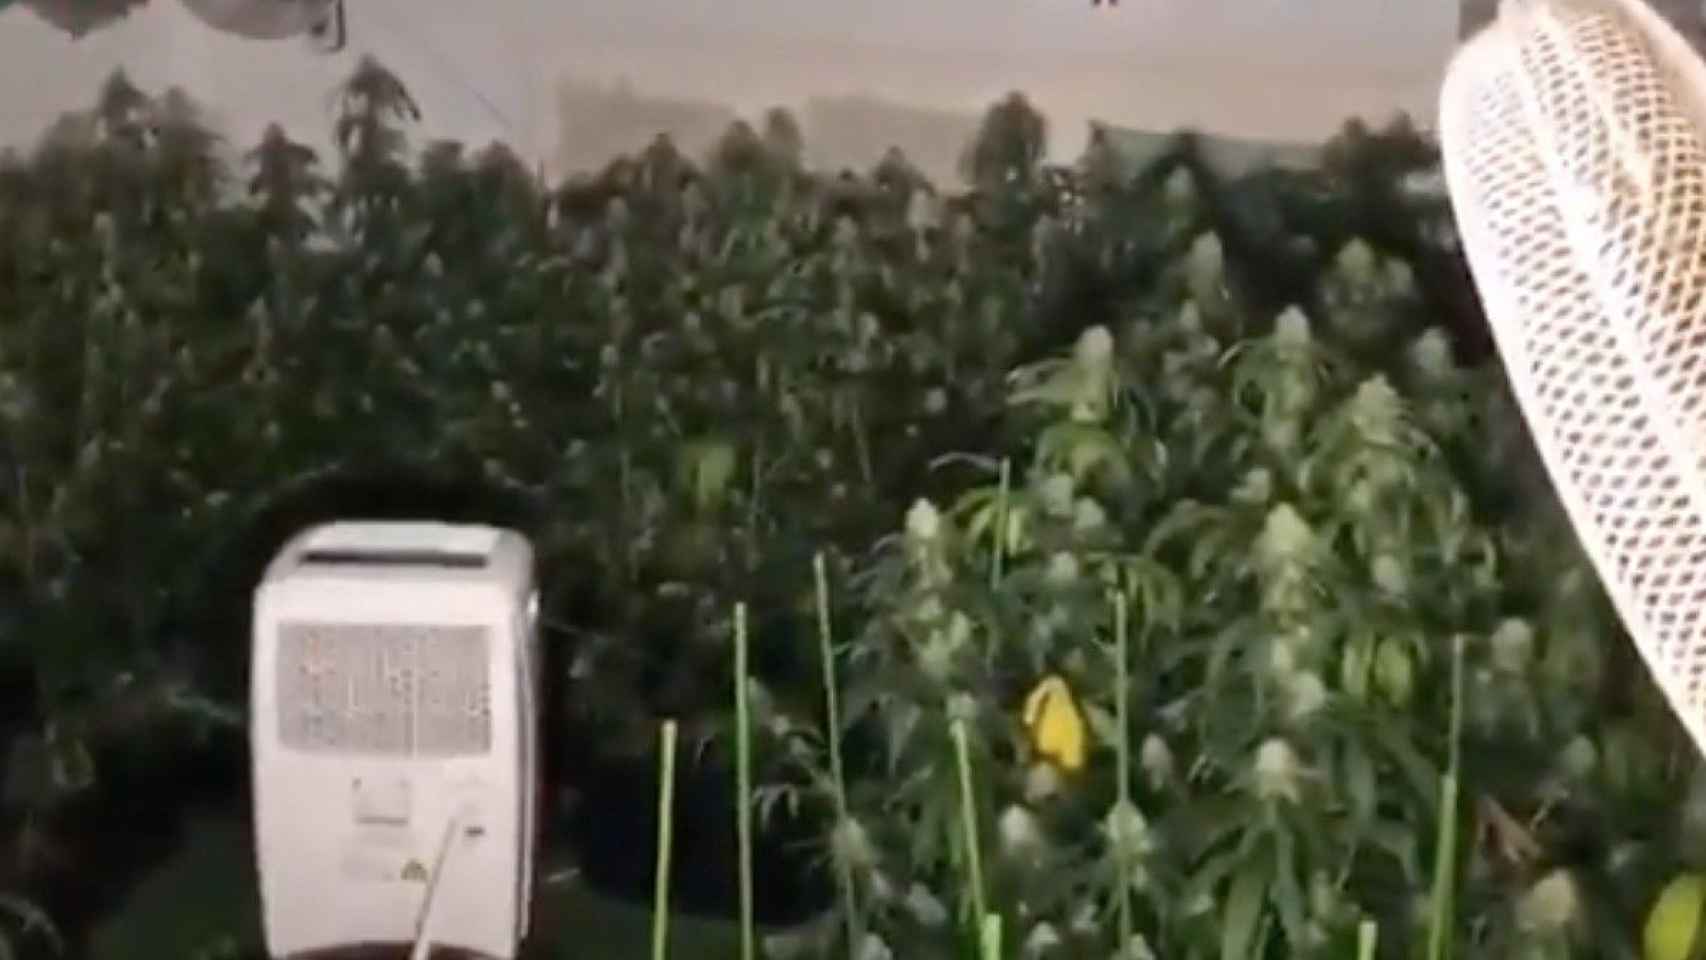 Plantación de marihuana en el Poblenou / MOSSOS D'ESQUADRA